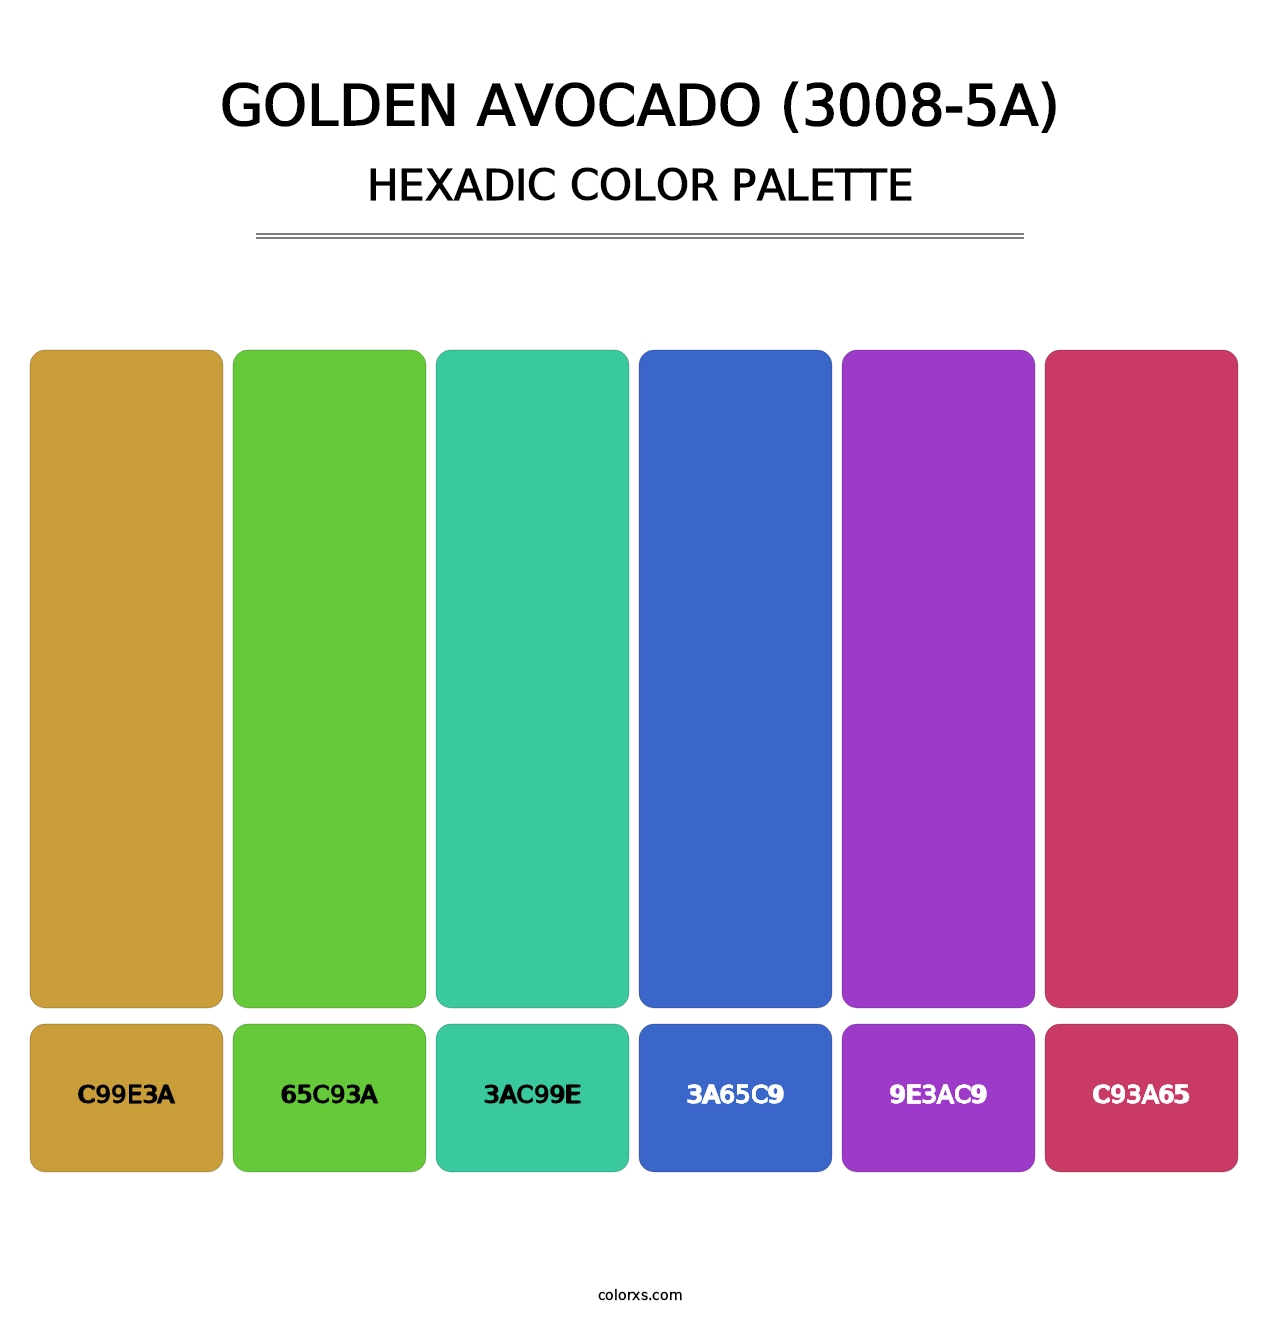 Golden Avocado (3008-5A) - Hexadic Color Palette